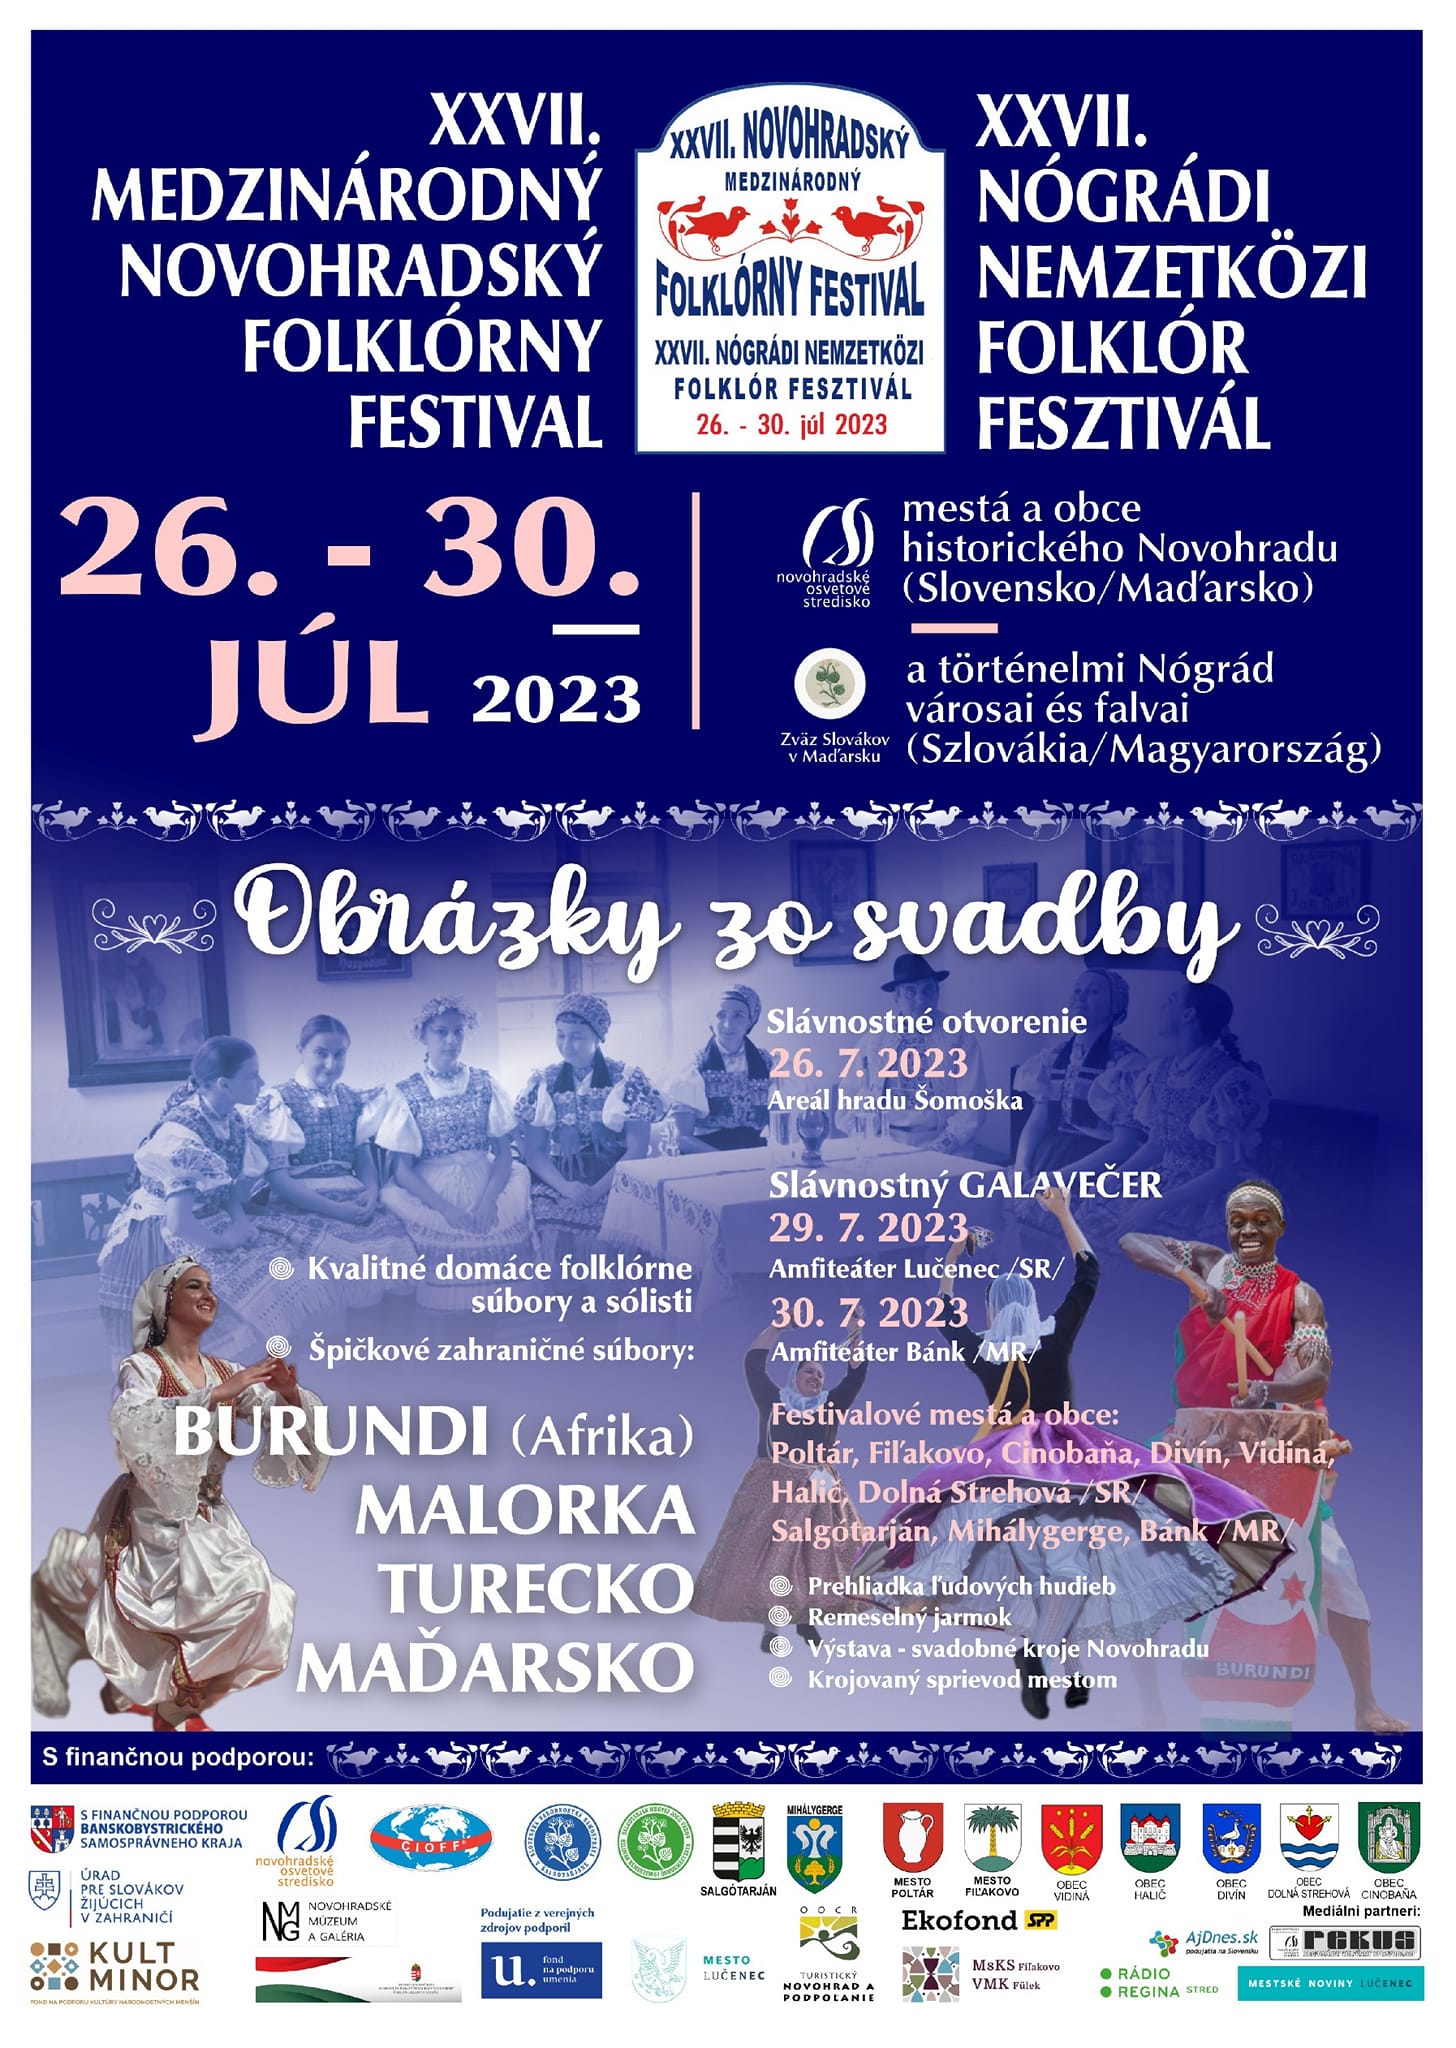 Medzinárodný Novohradský folklórny festival 2023 Lučenec - 27. ročník